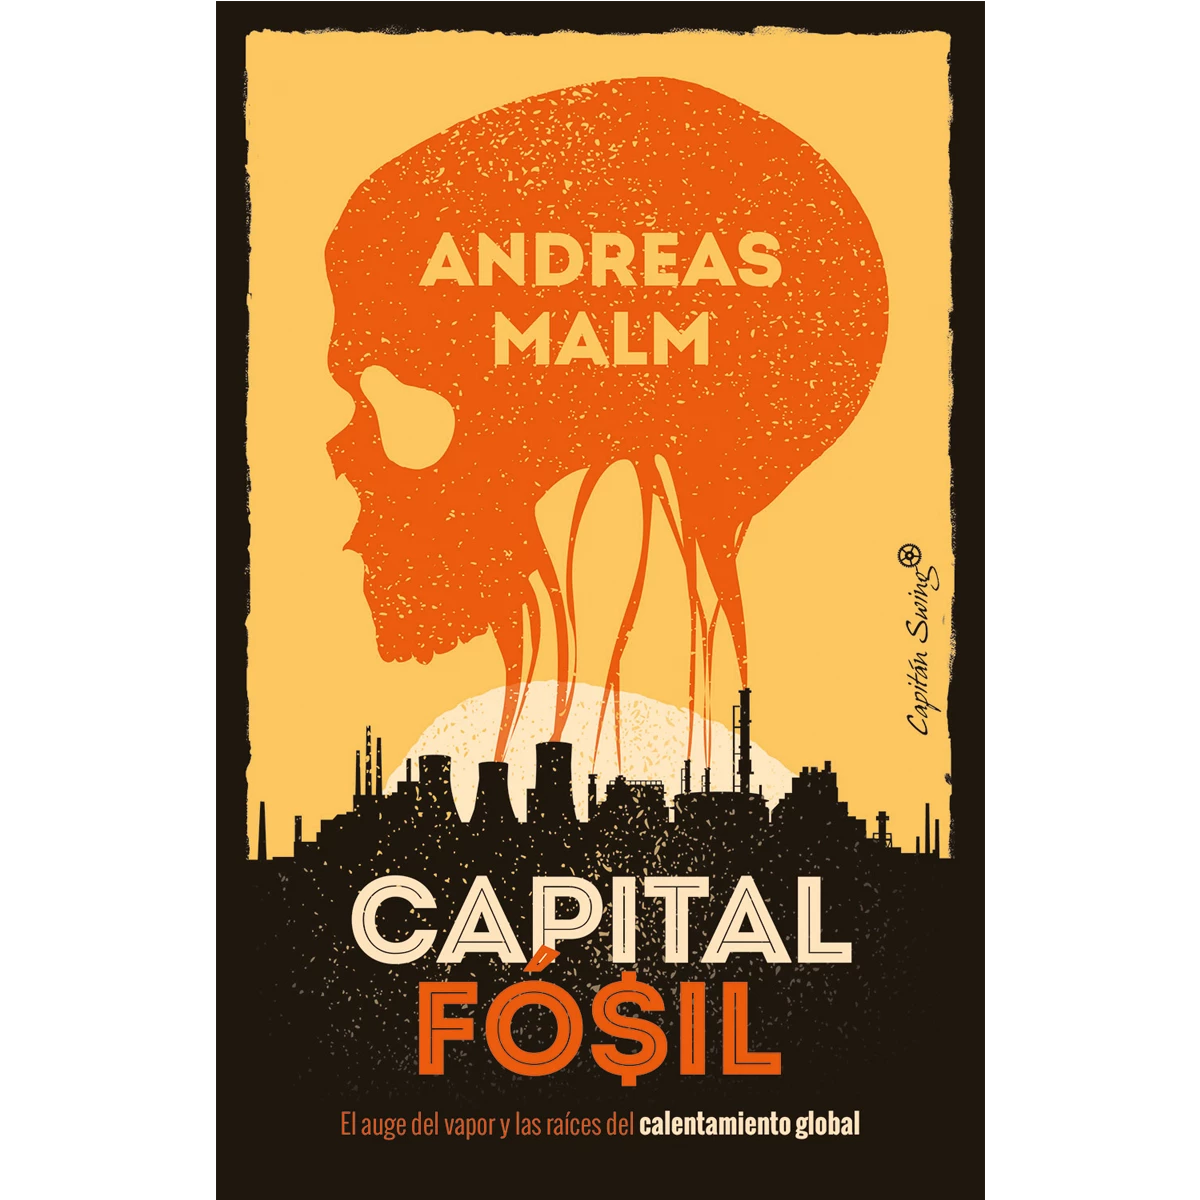 Capital fósil